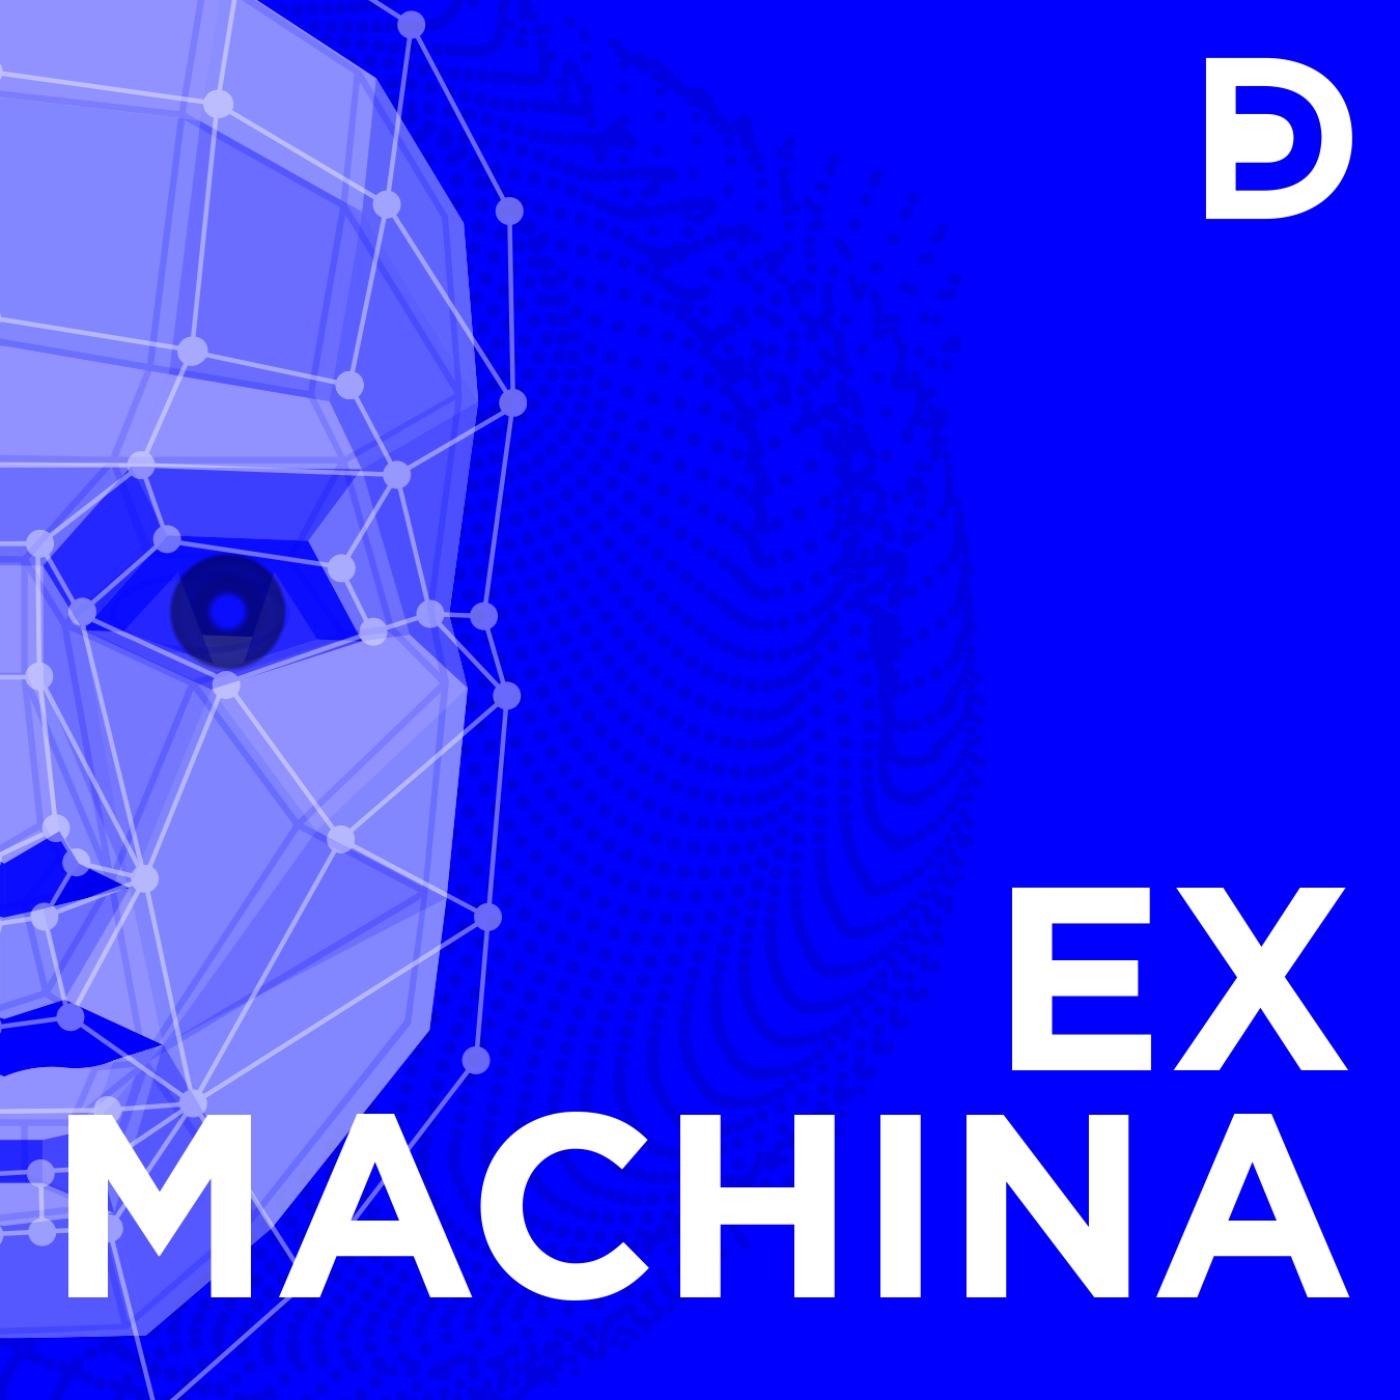 Ex Machina